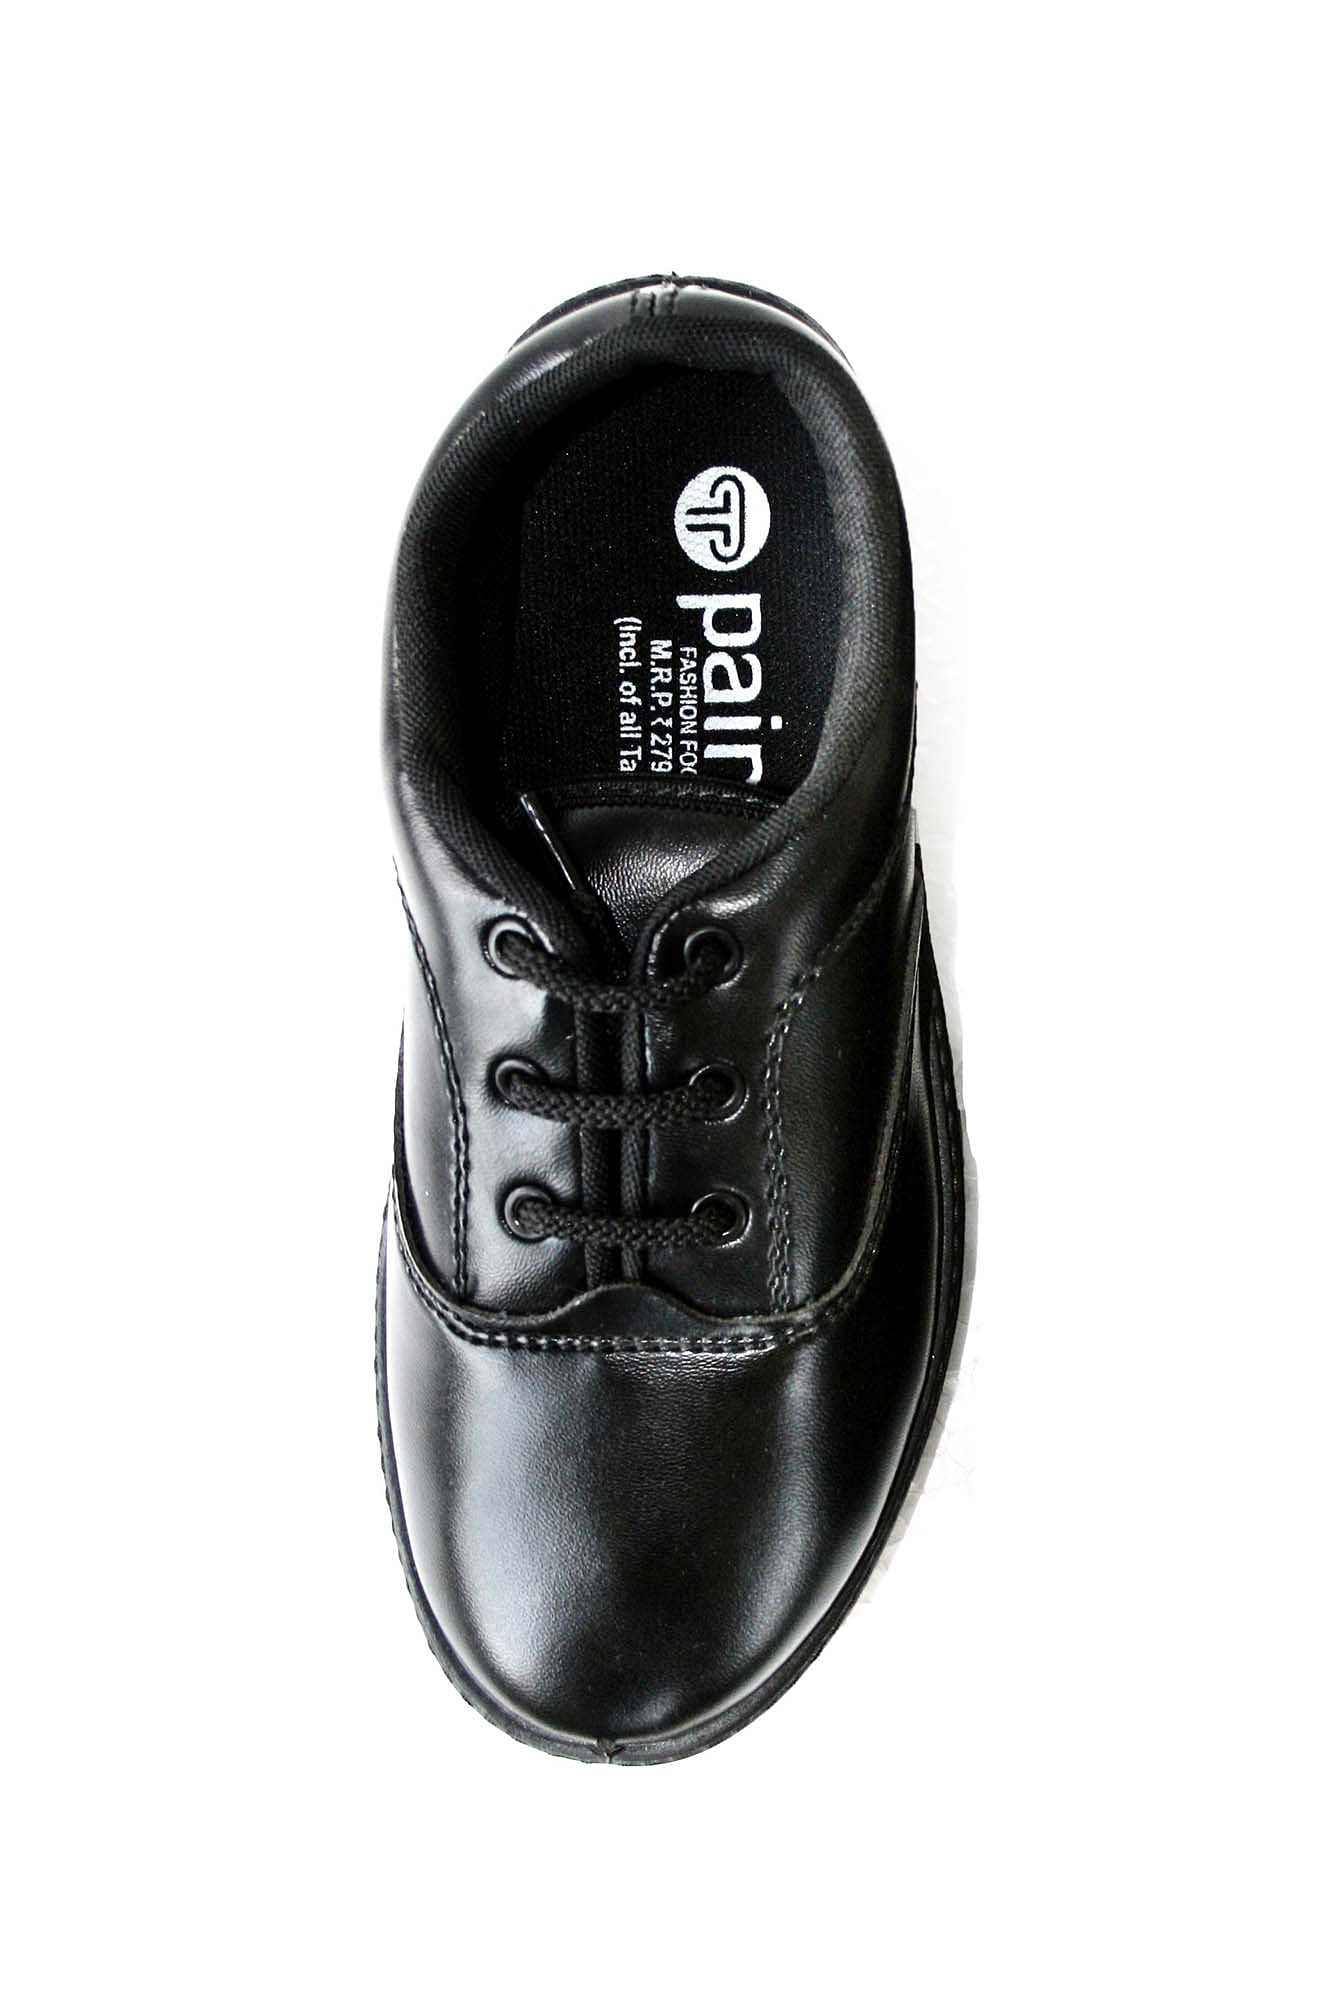 Pair-it Boys PVC School Shoe - Size-11,12,13 - Color Black